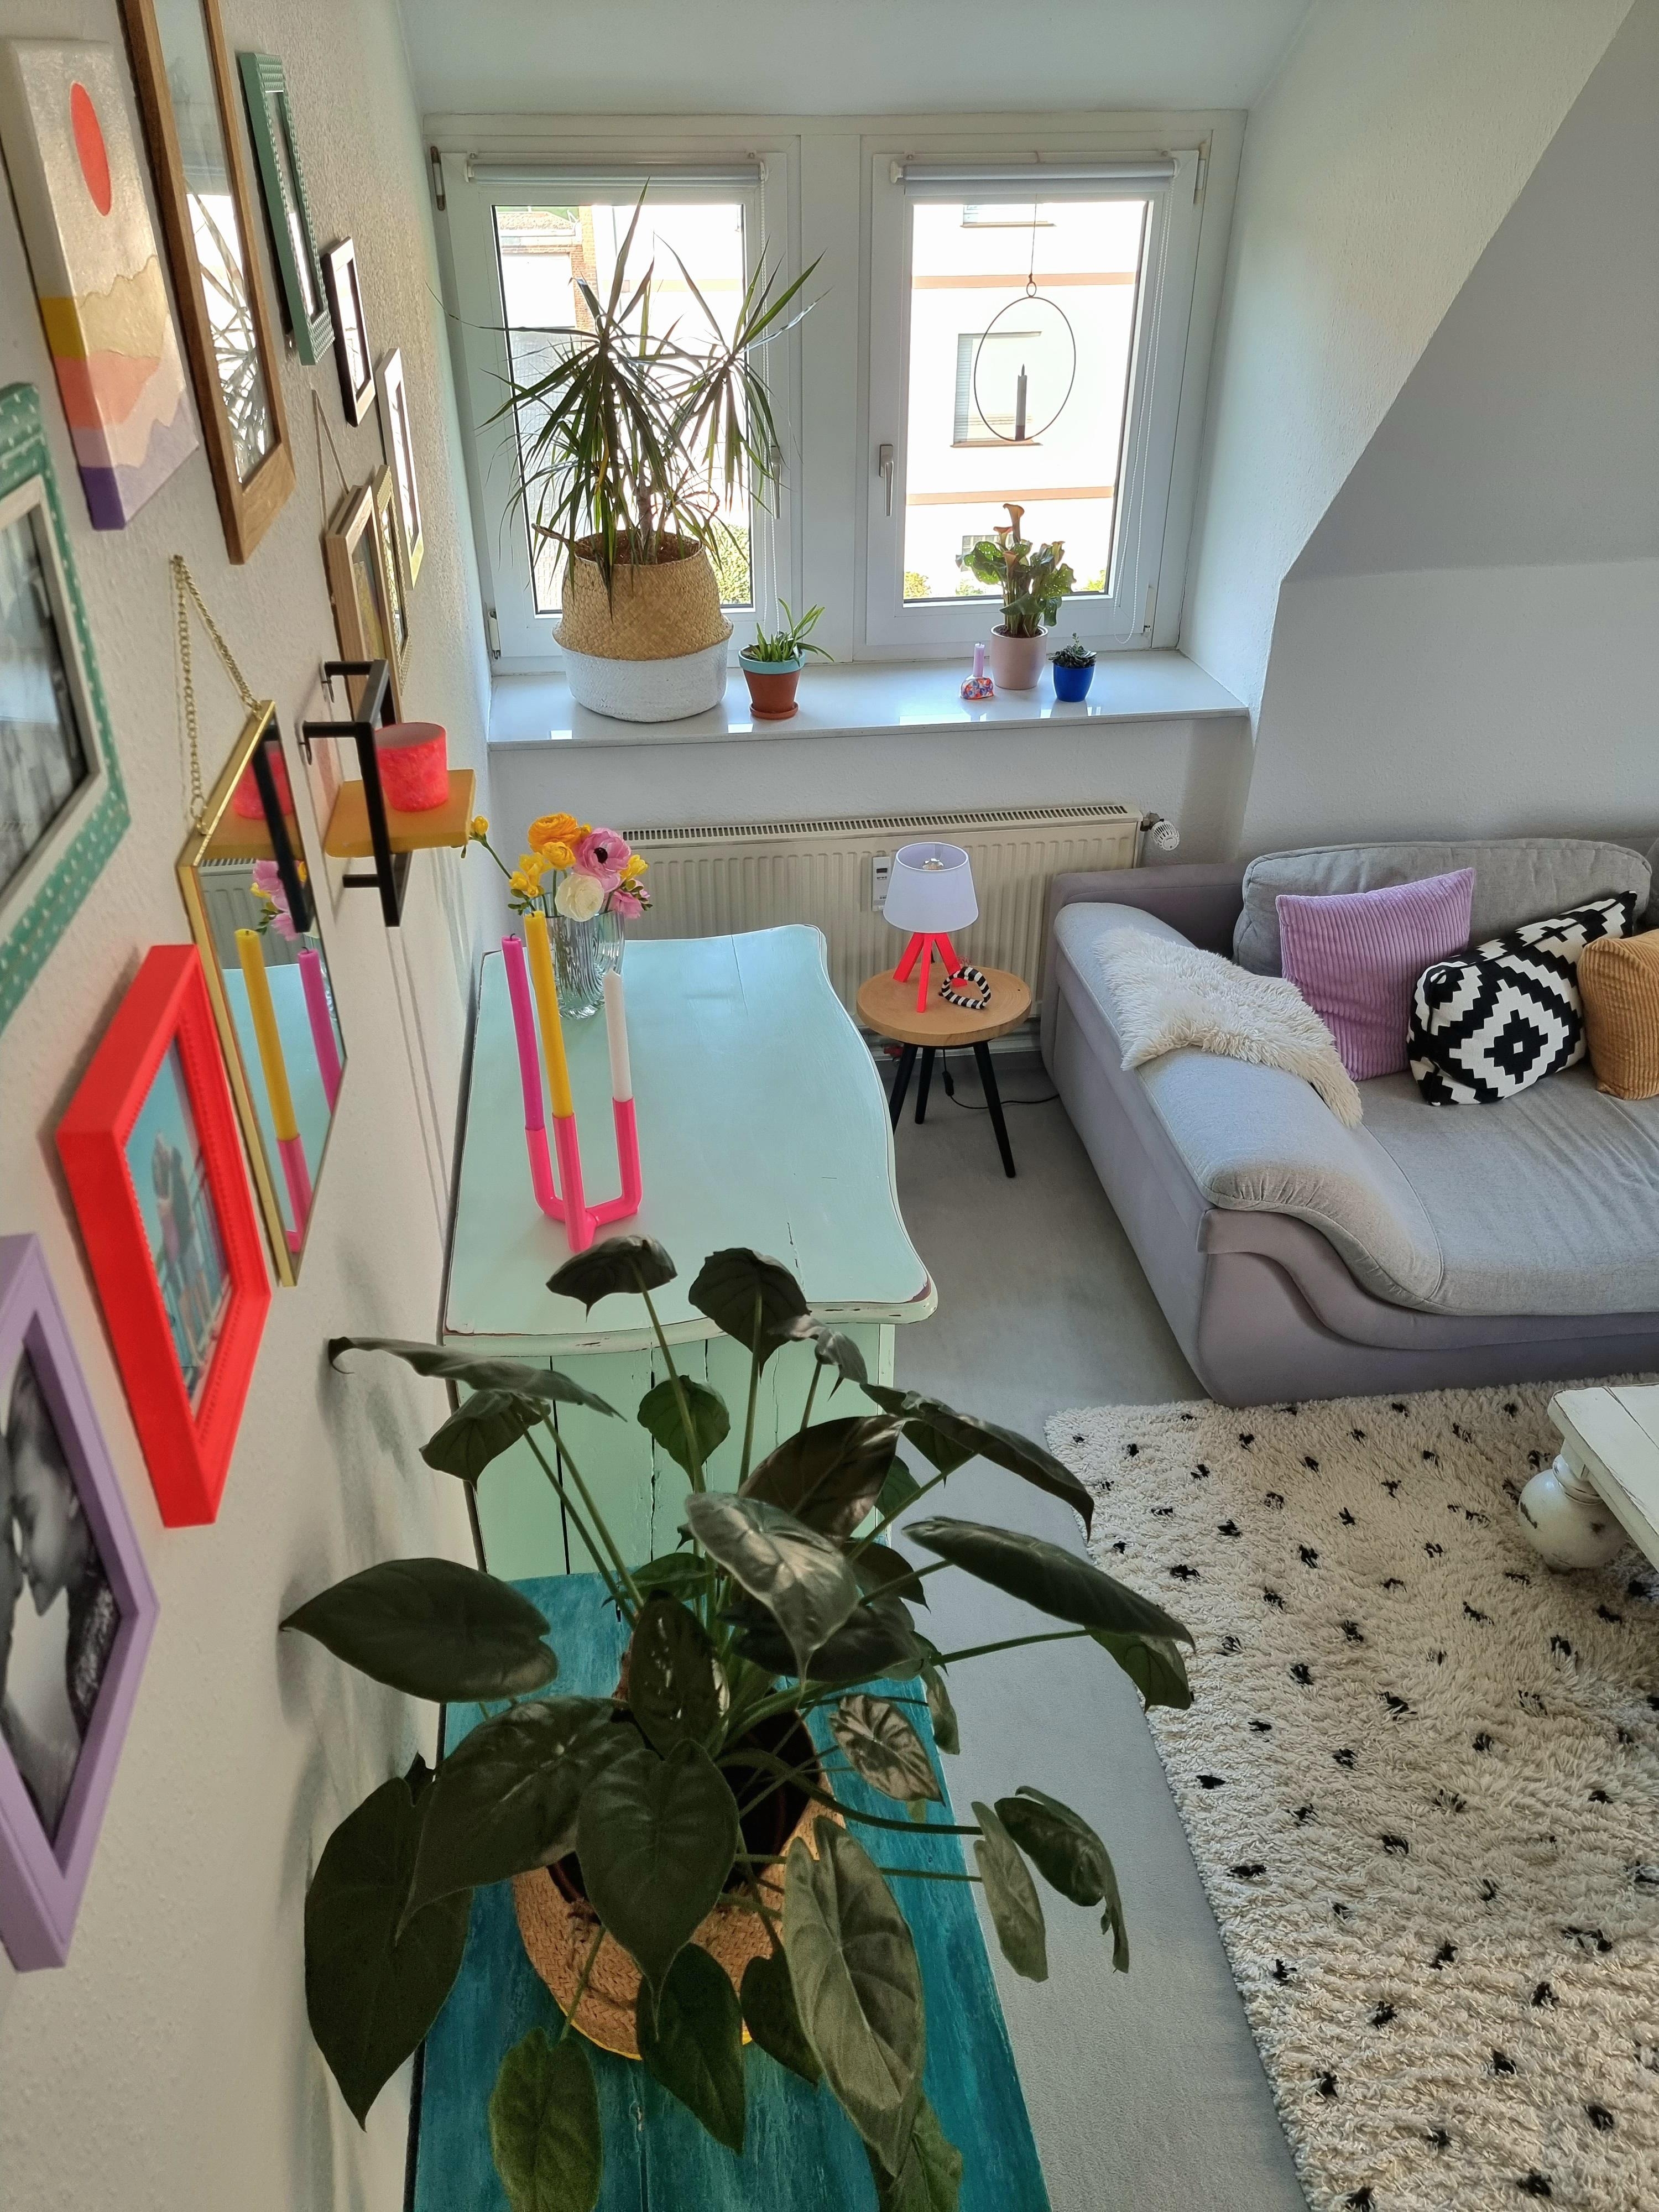 #dachschräge im #wohnzimmer kann auch #gemütlich sein👌 #colorfulhome #cozy #upcycling mit #farbe 🌈 #greenliving 🌿